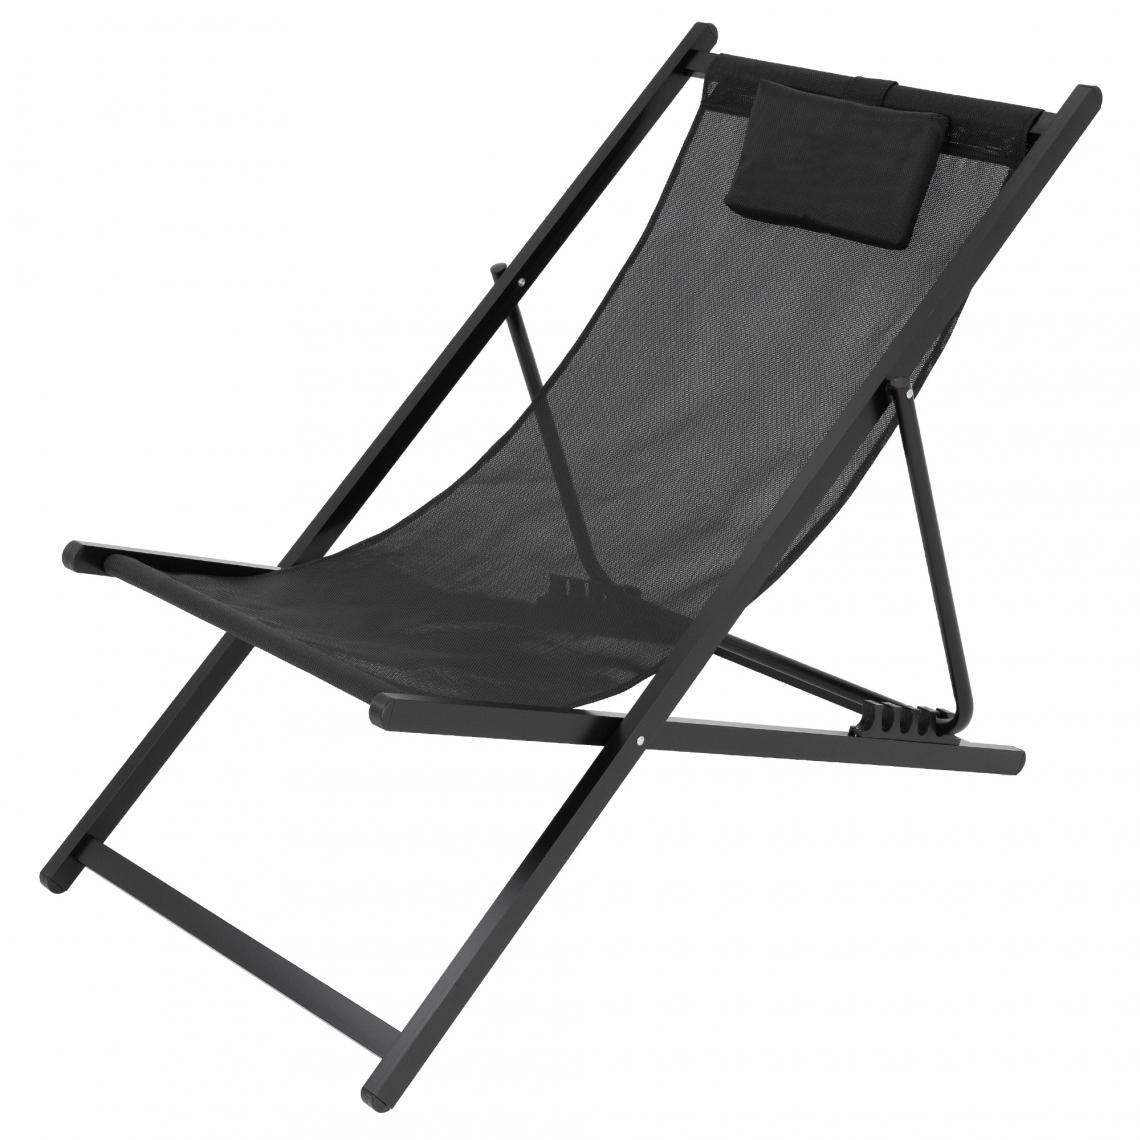 Ecd Germany - Chaise longue pliante bain de soleil de plage jardin réglable en aluminium noir - Transats, chaises longues